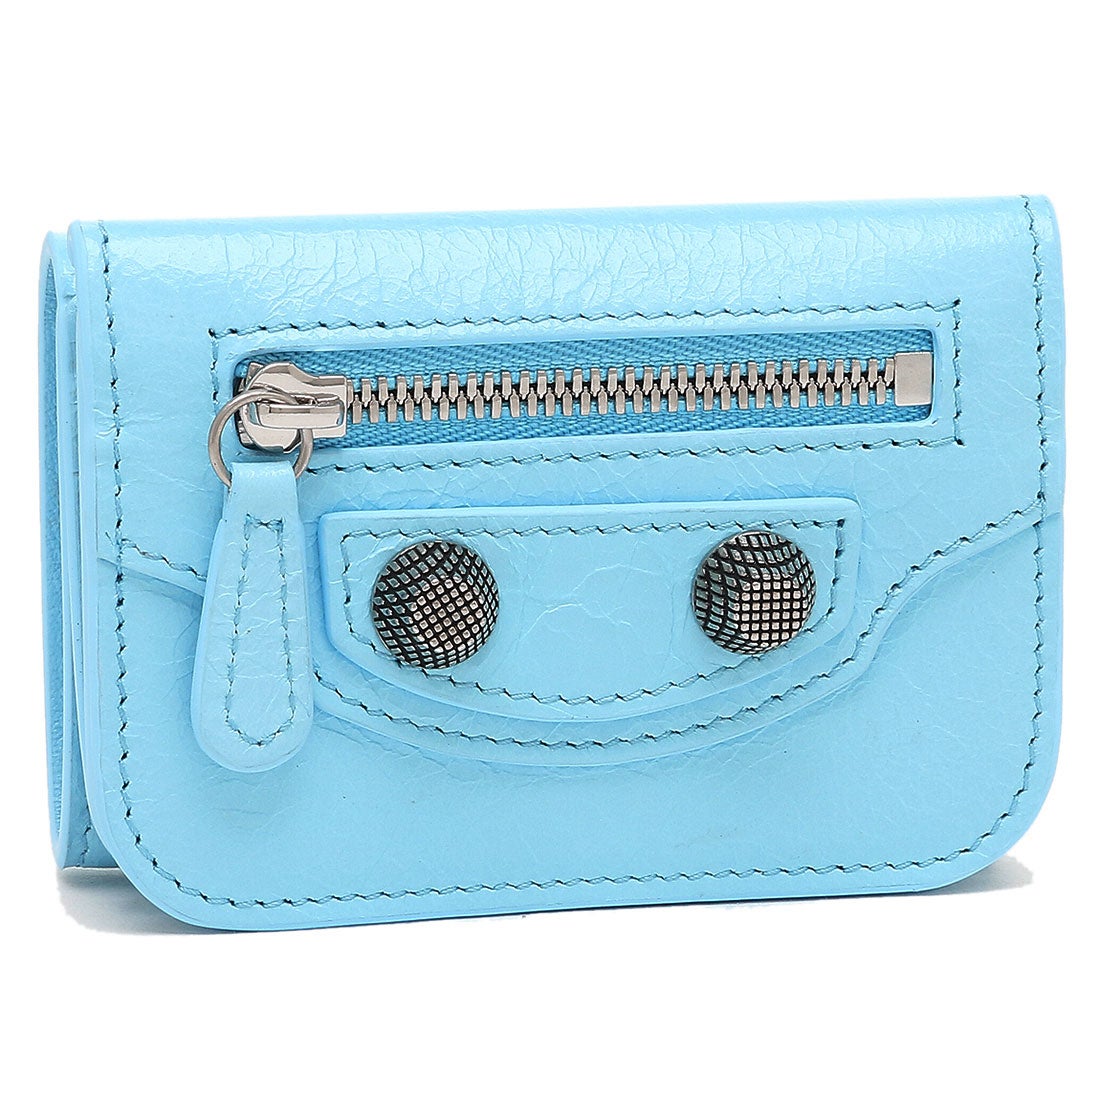 公式通販サイト BALENCIAGA バレンシアガ 財布 二つ折り財布 青 水色 